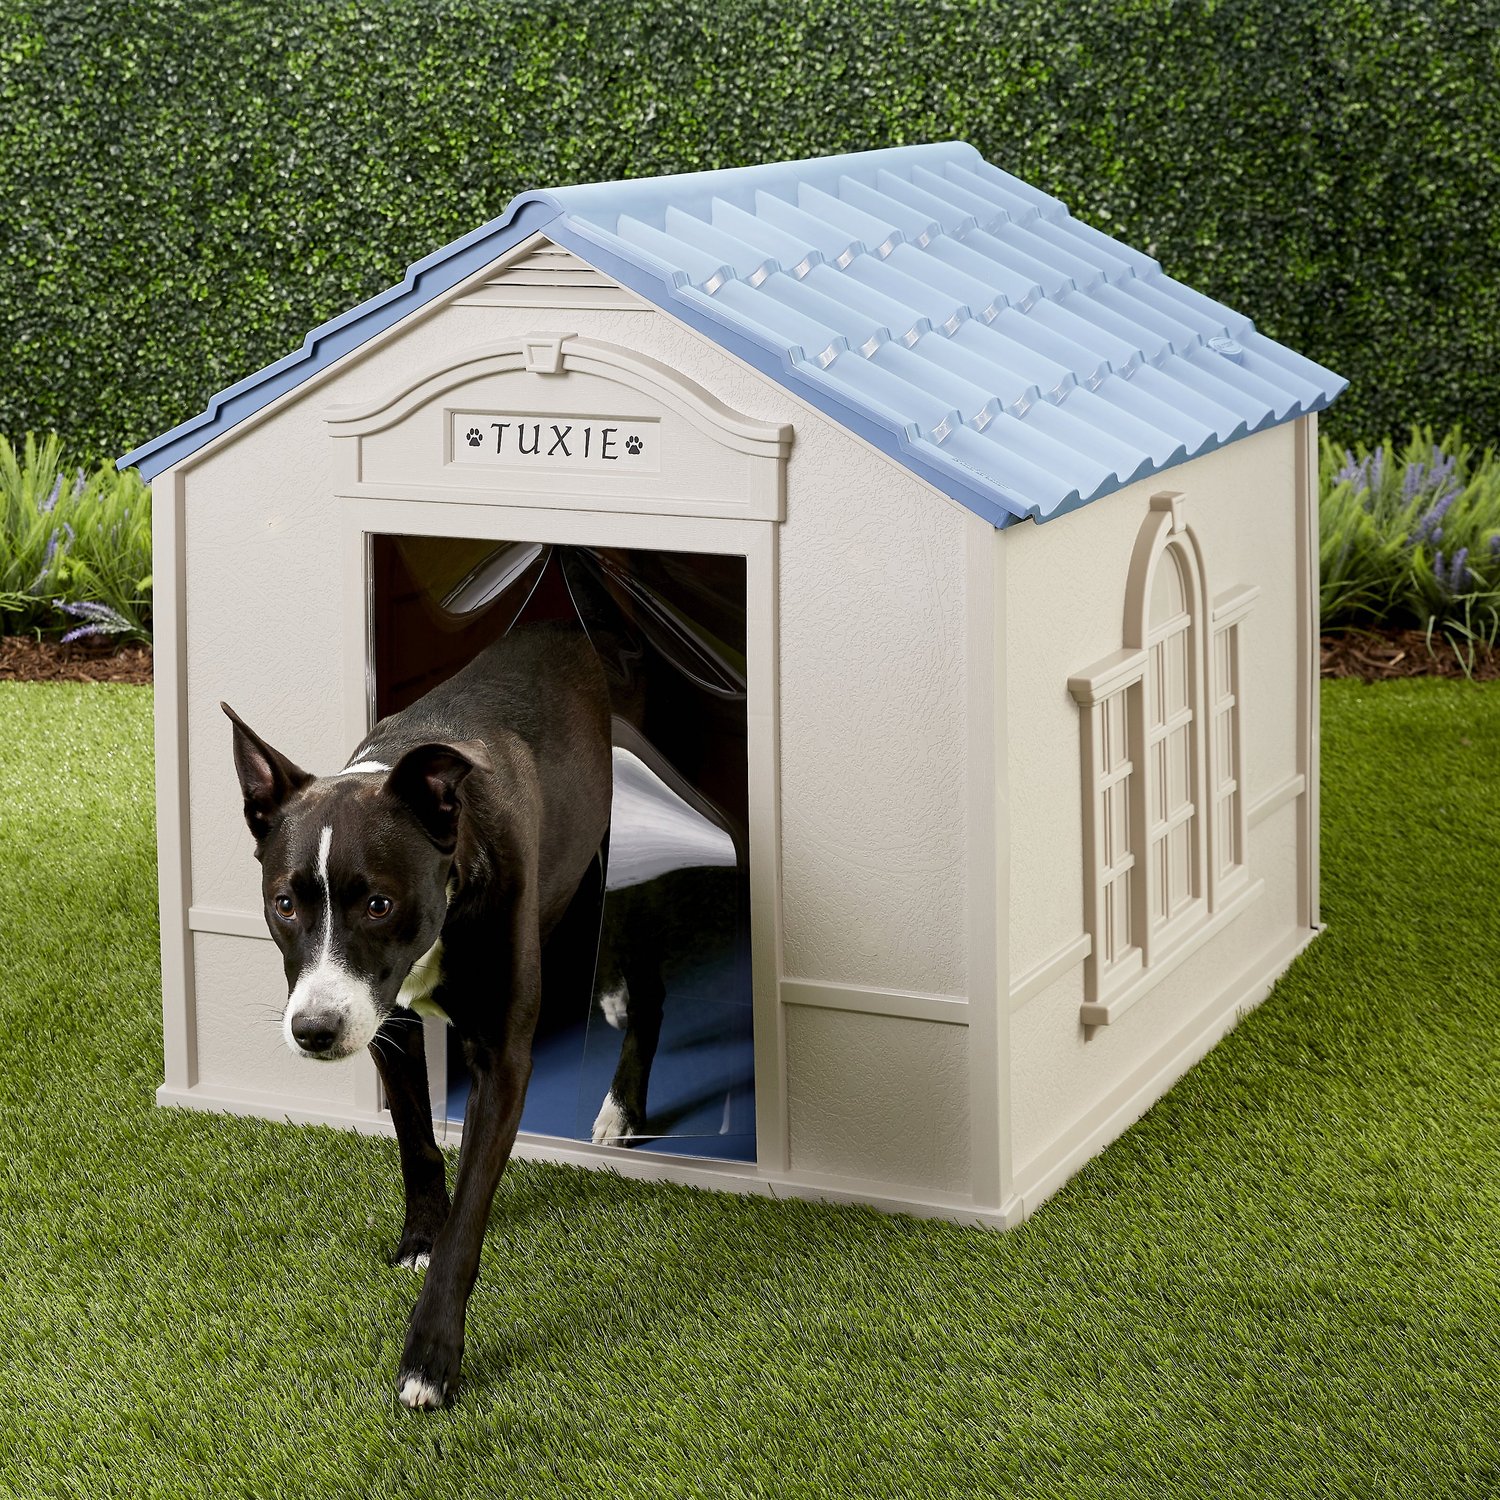 Зе дог хаус демо dog houses info. Kennel meaning. Dog House.